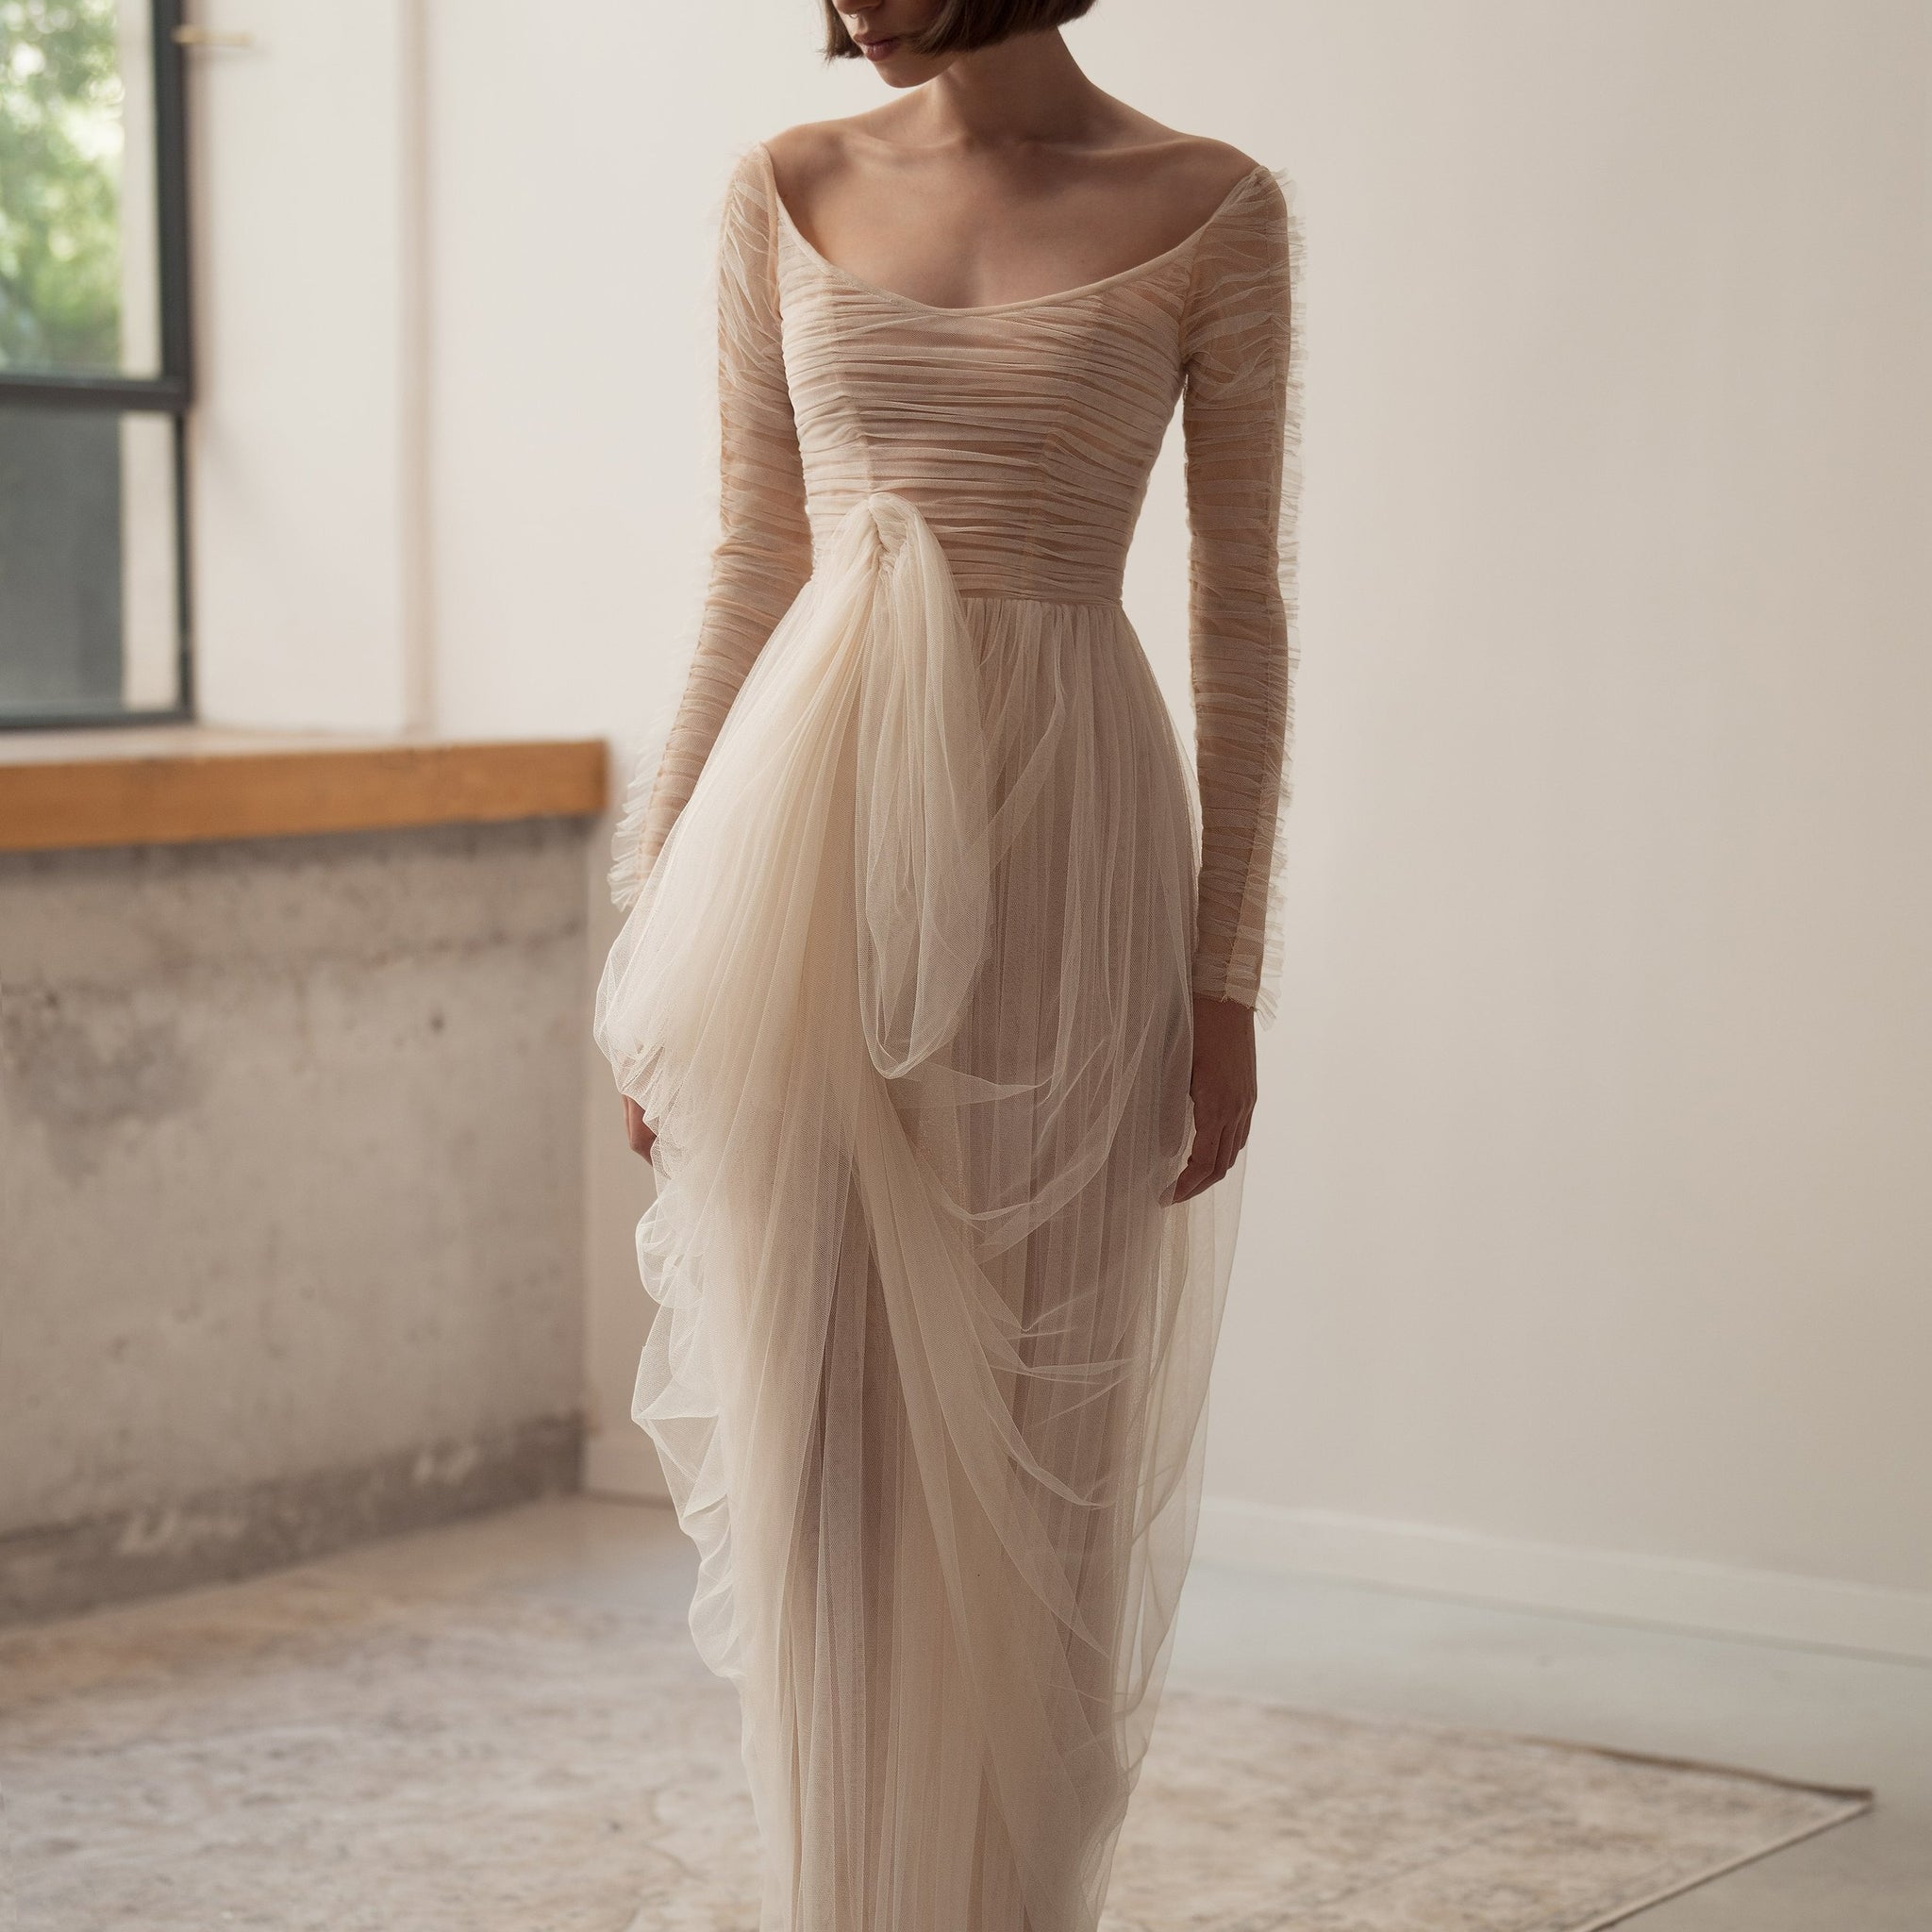 Dreamy gerade Unkrautkleid Einfache Langarm Braut Robe Elegant Falten Tüll Brautkleider Vestidos de Novia